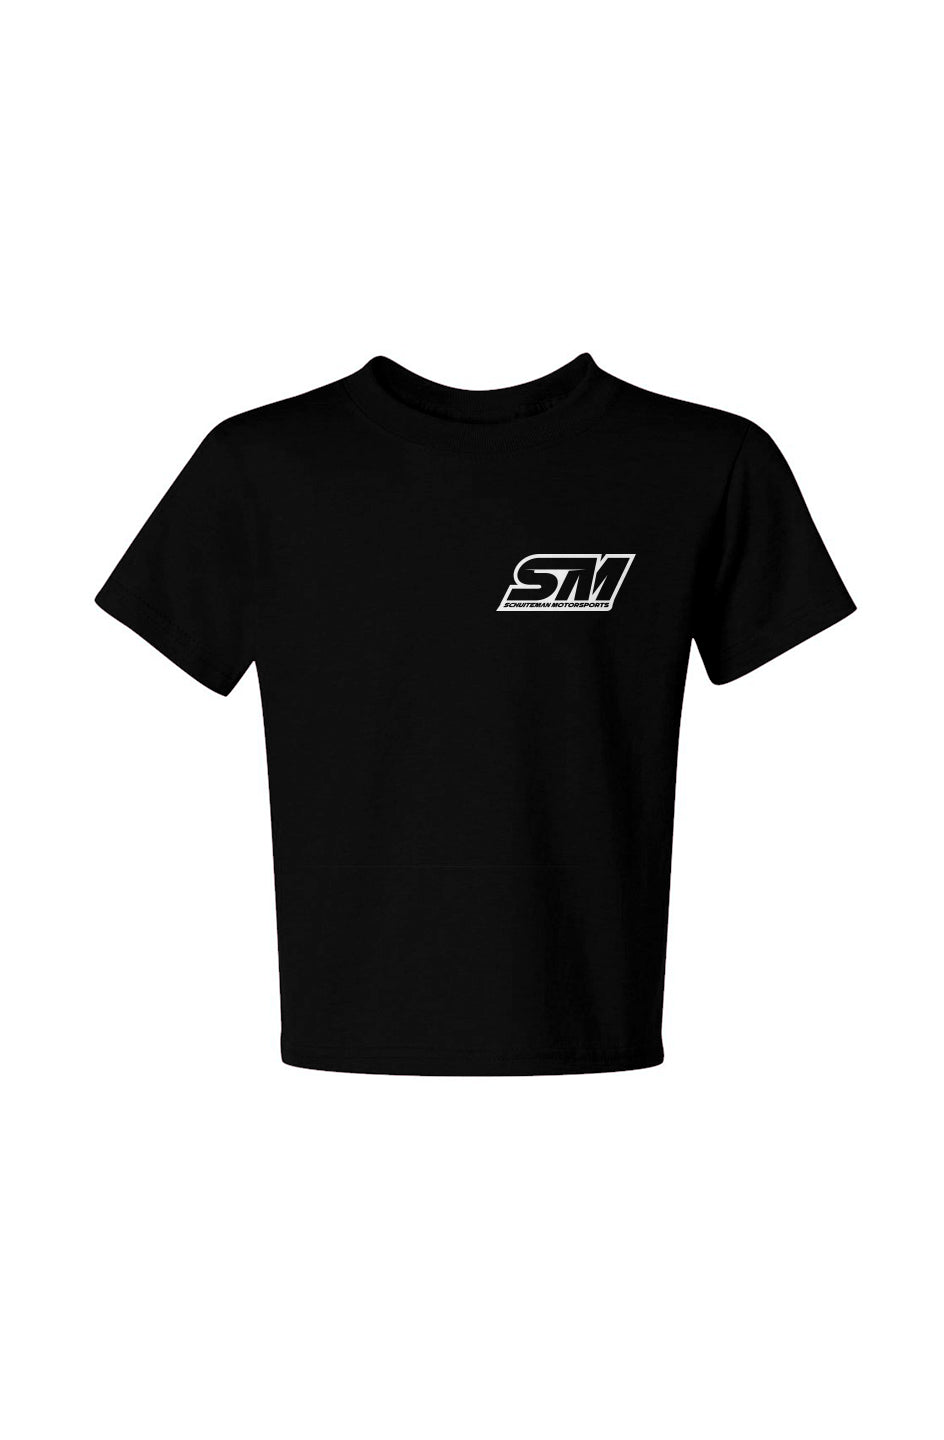 Small Logo Youth T-Shirt | Josh Schuiteman